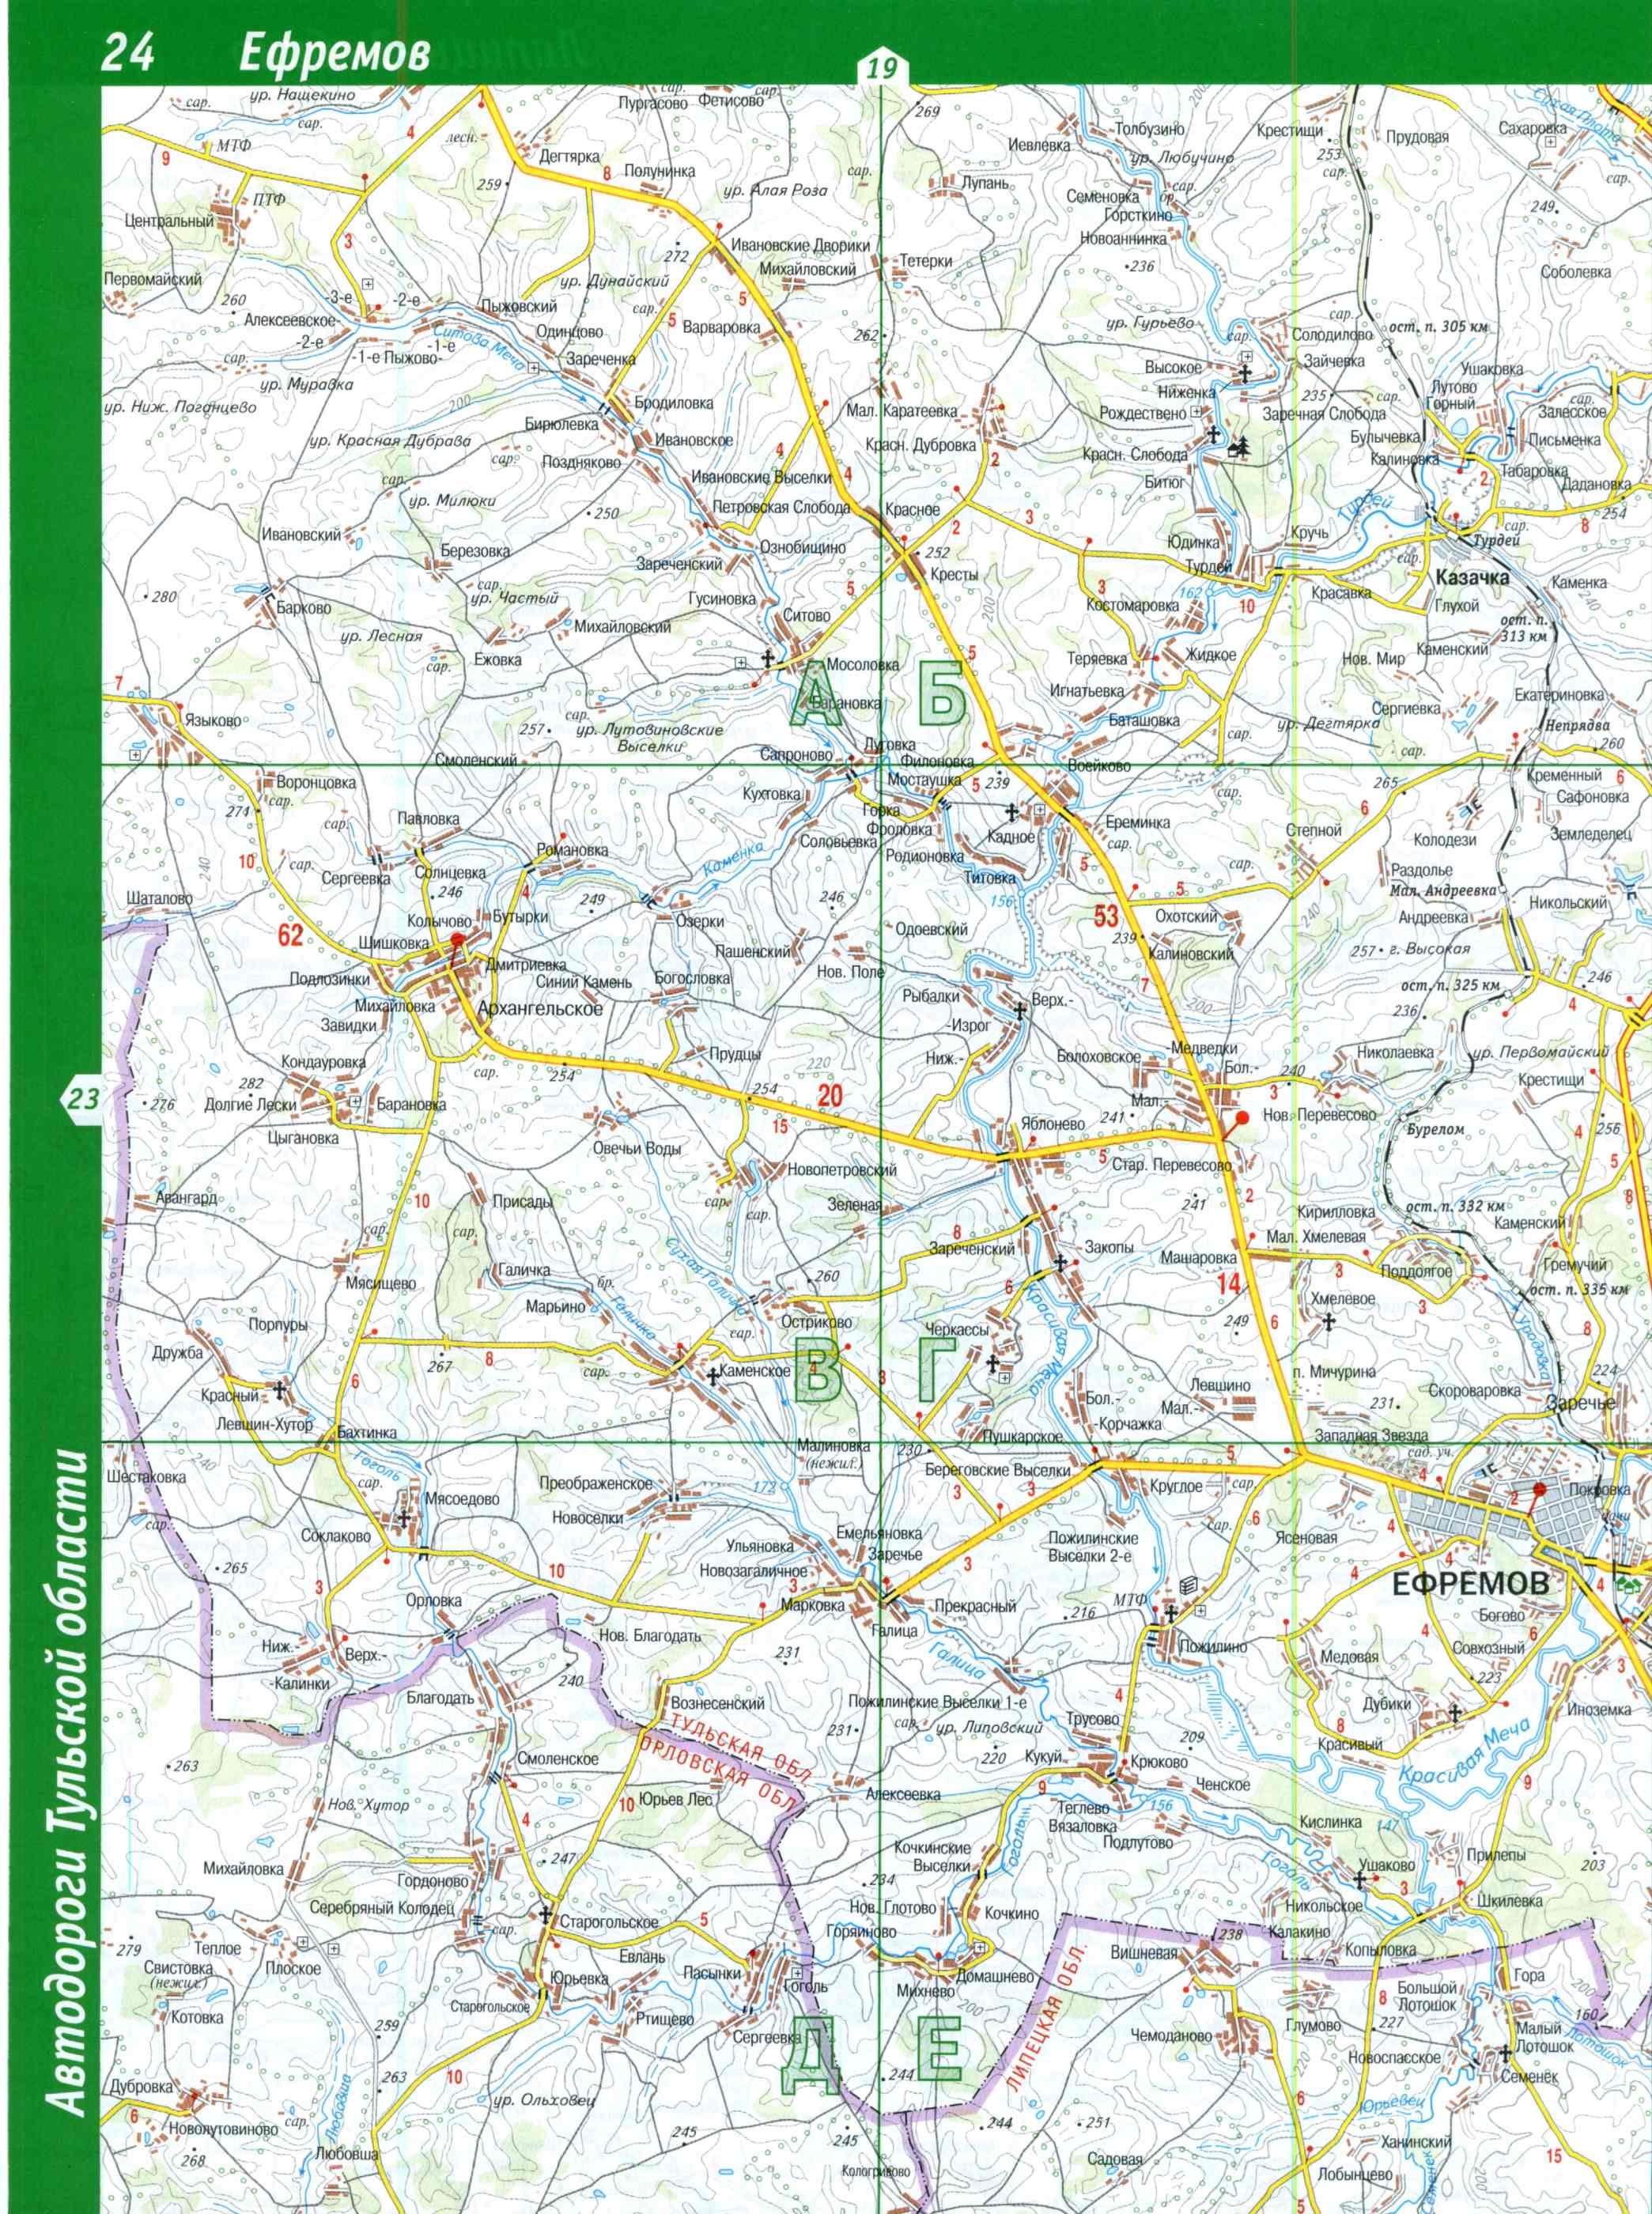 Карта Тульской области топографическая. Подробная топографическая карта Тульской области масштаба 1см:2км, C3 - 